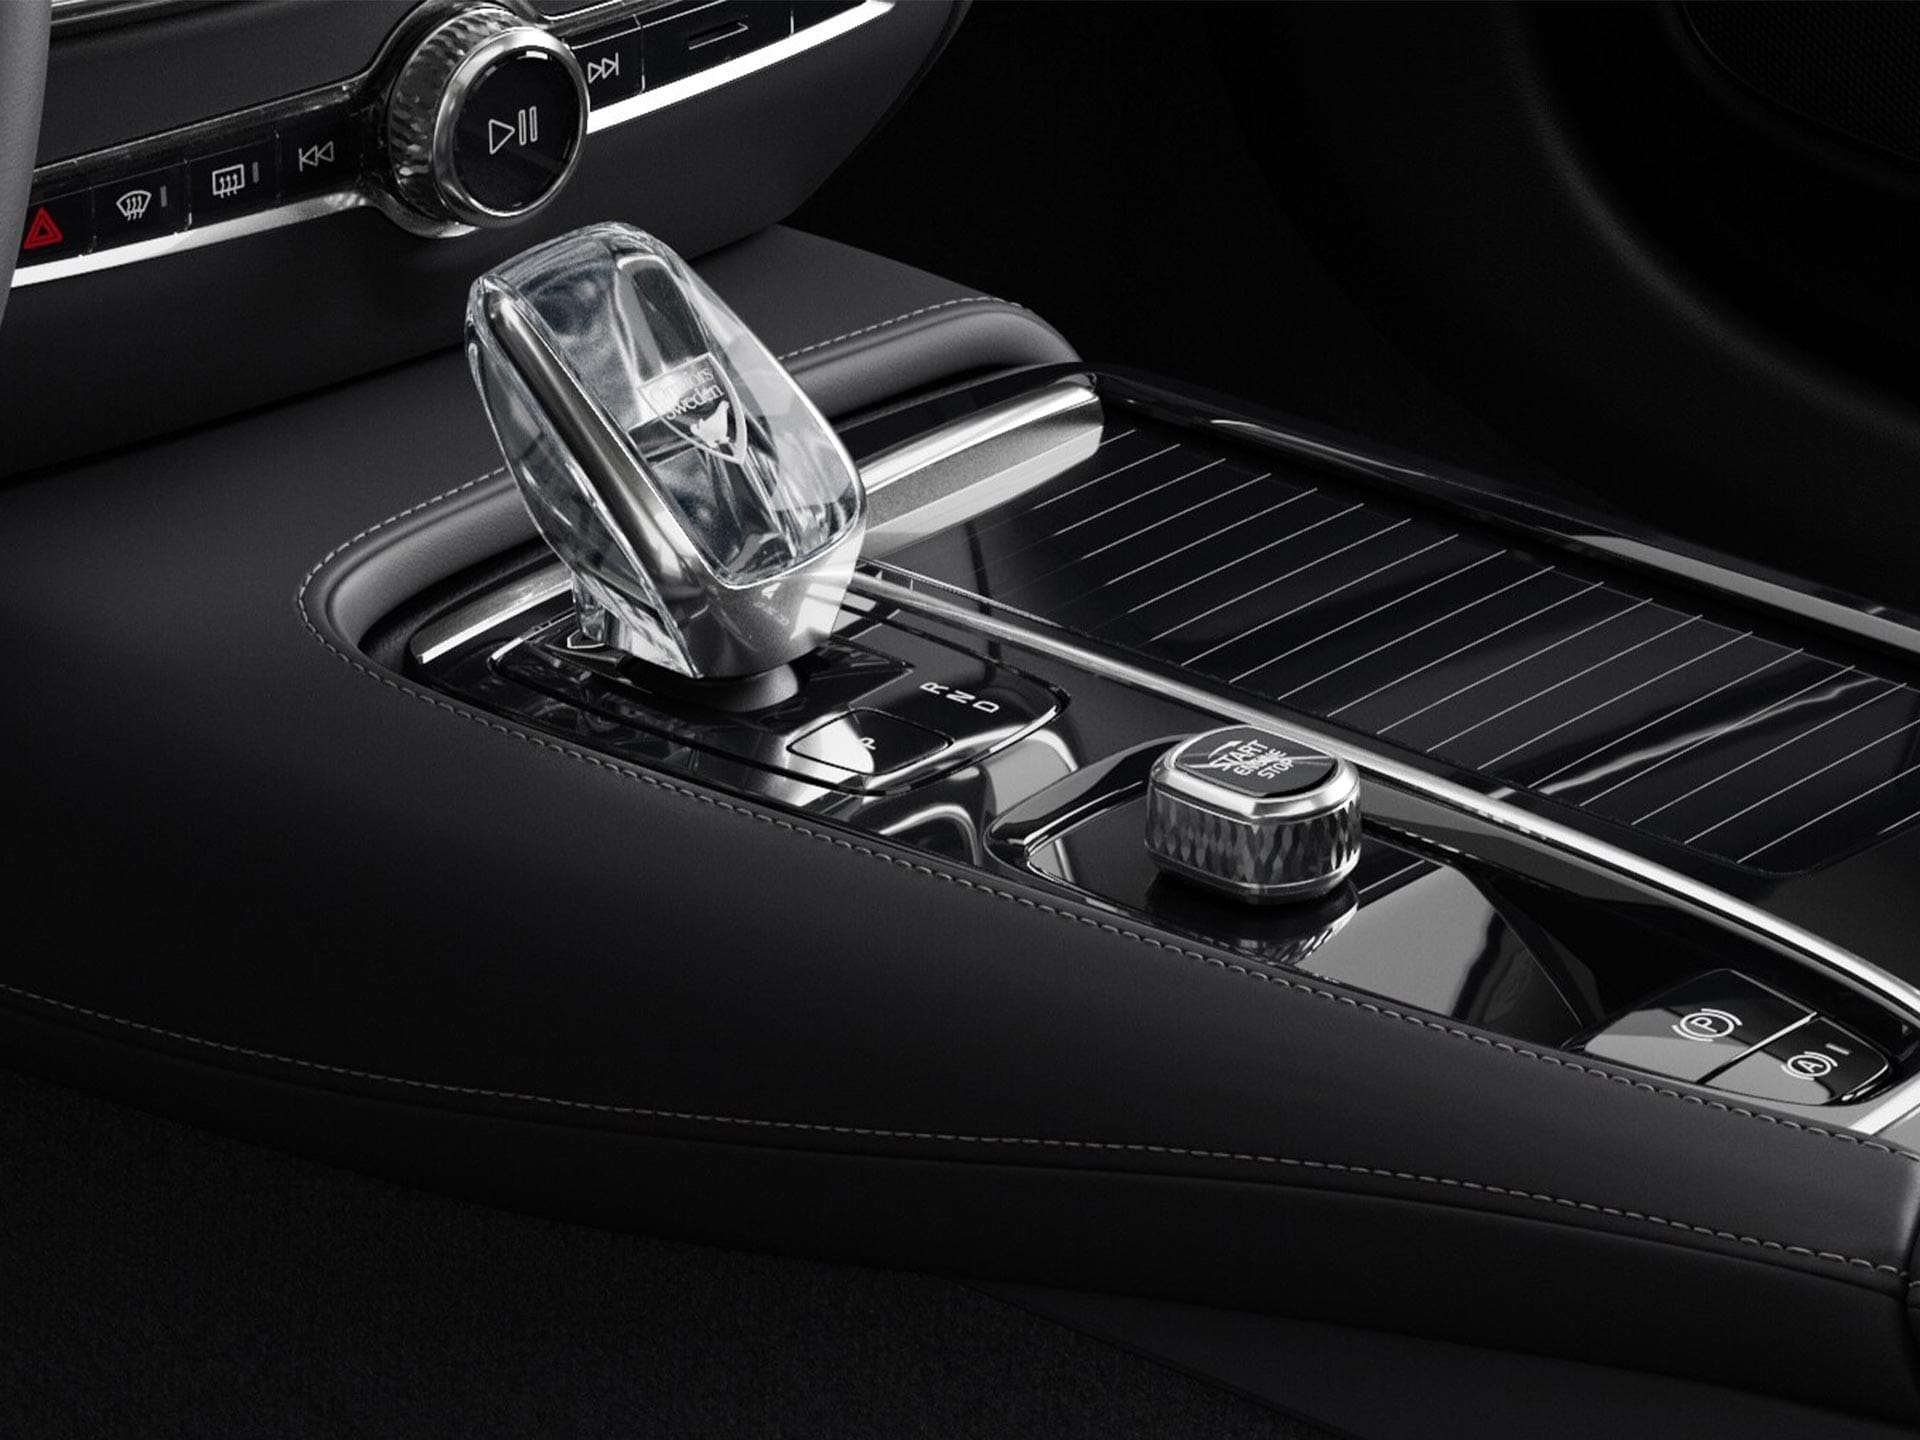 Κουμπί εκκίνησης και κρυστάλλινος επιλογέας ταχυτήτων στην κεντρική κονσόλα του Volvo V60 plug-in hybrid.